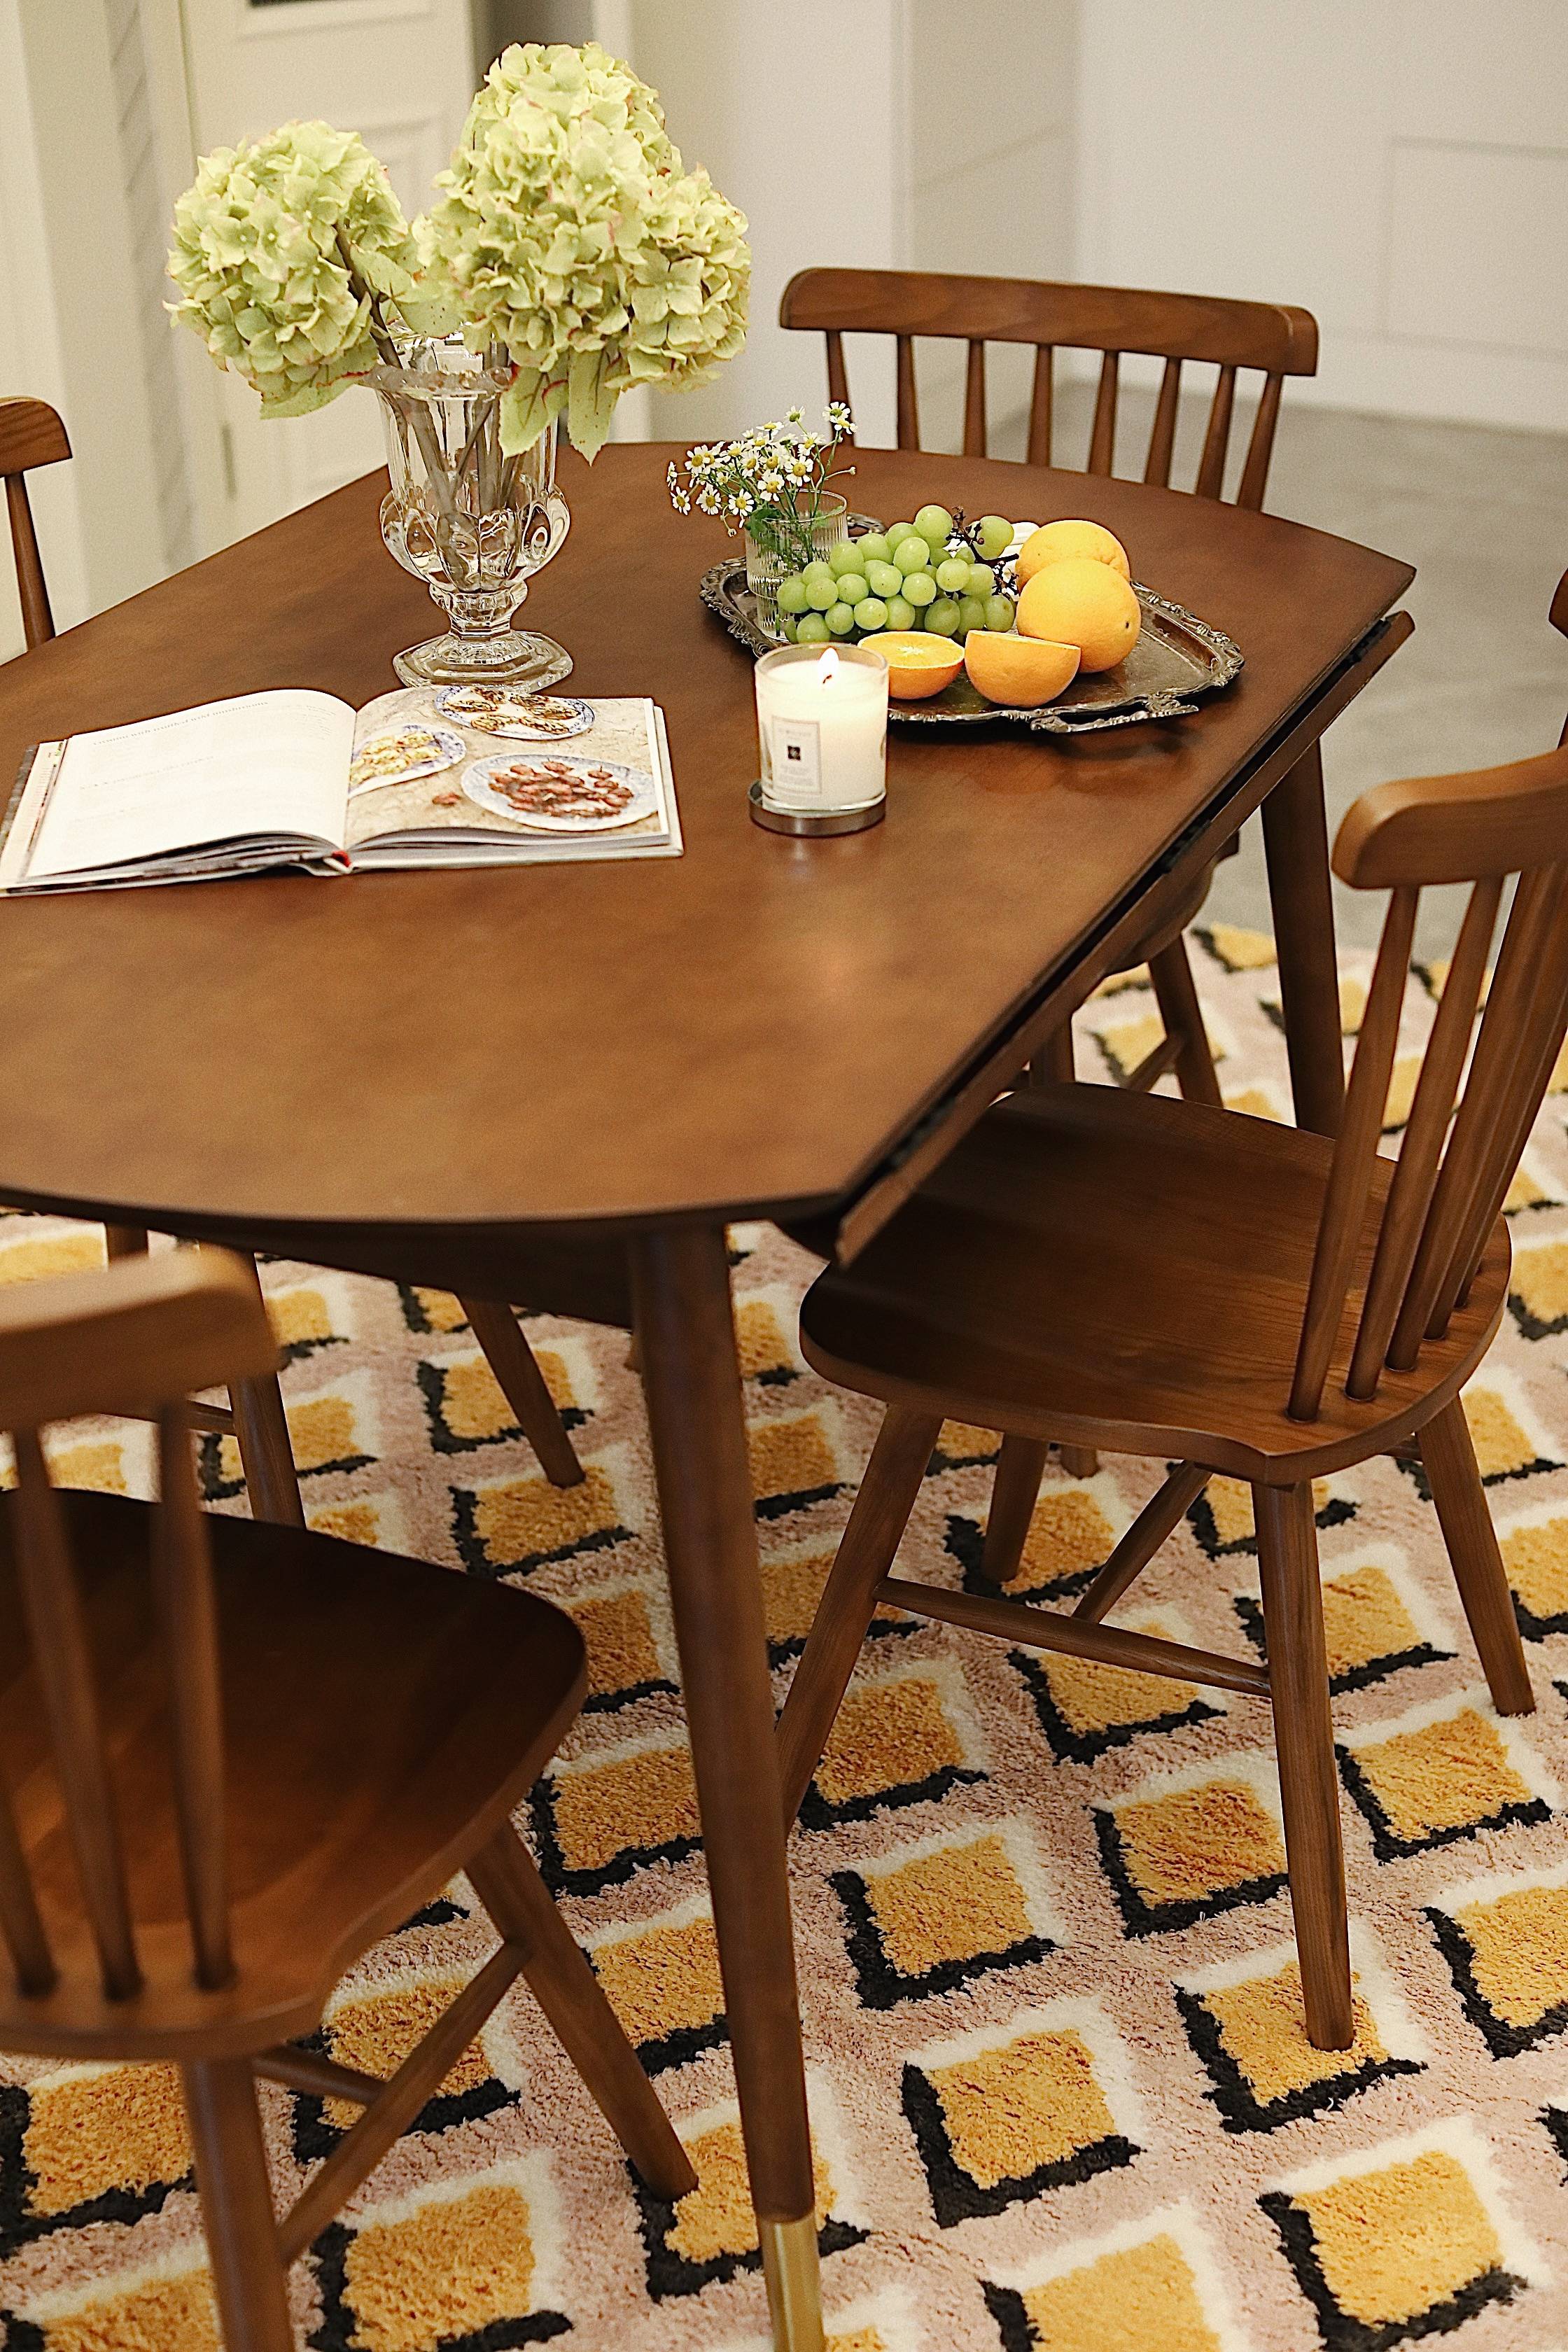 这个极简实木餐桌在家的真实模样!